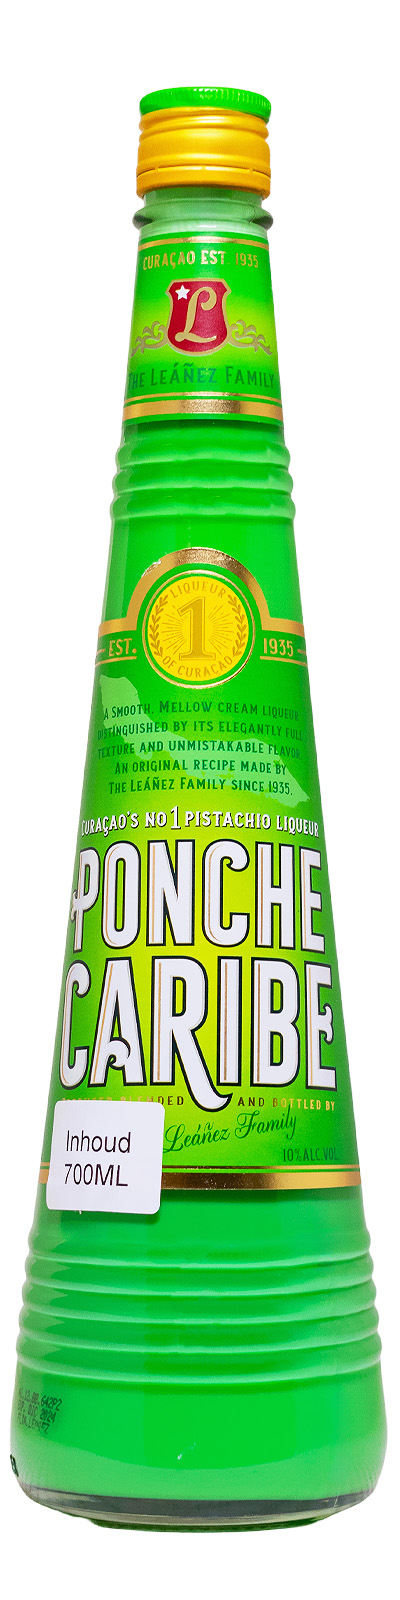 Ponche Caribe Pistachio - 0,7L 10% vol